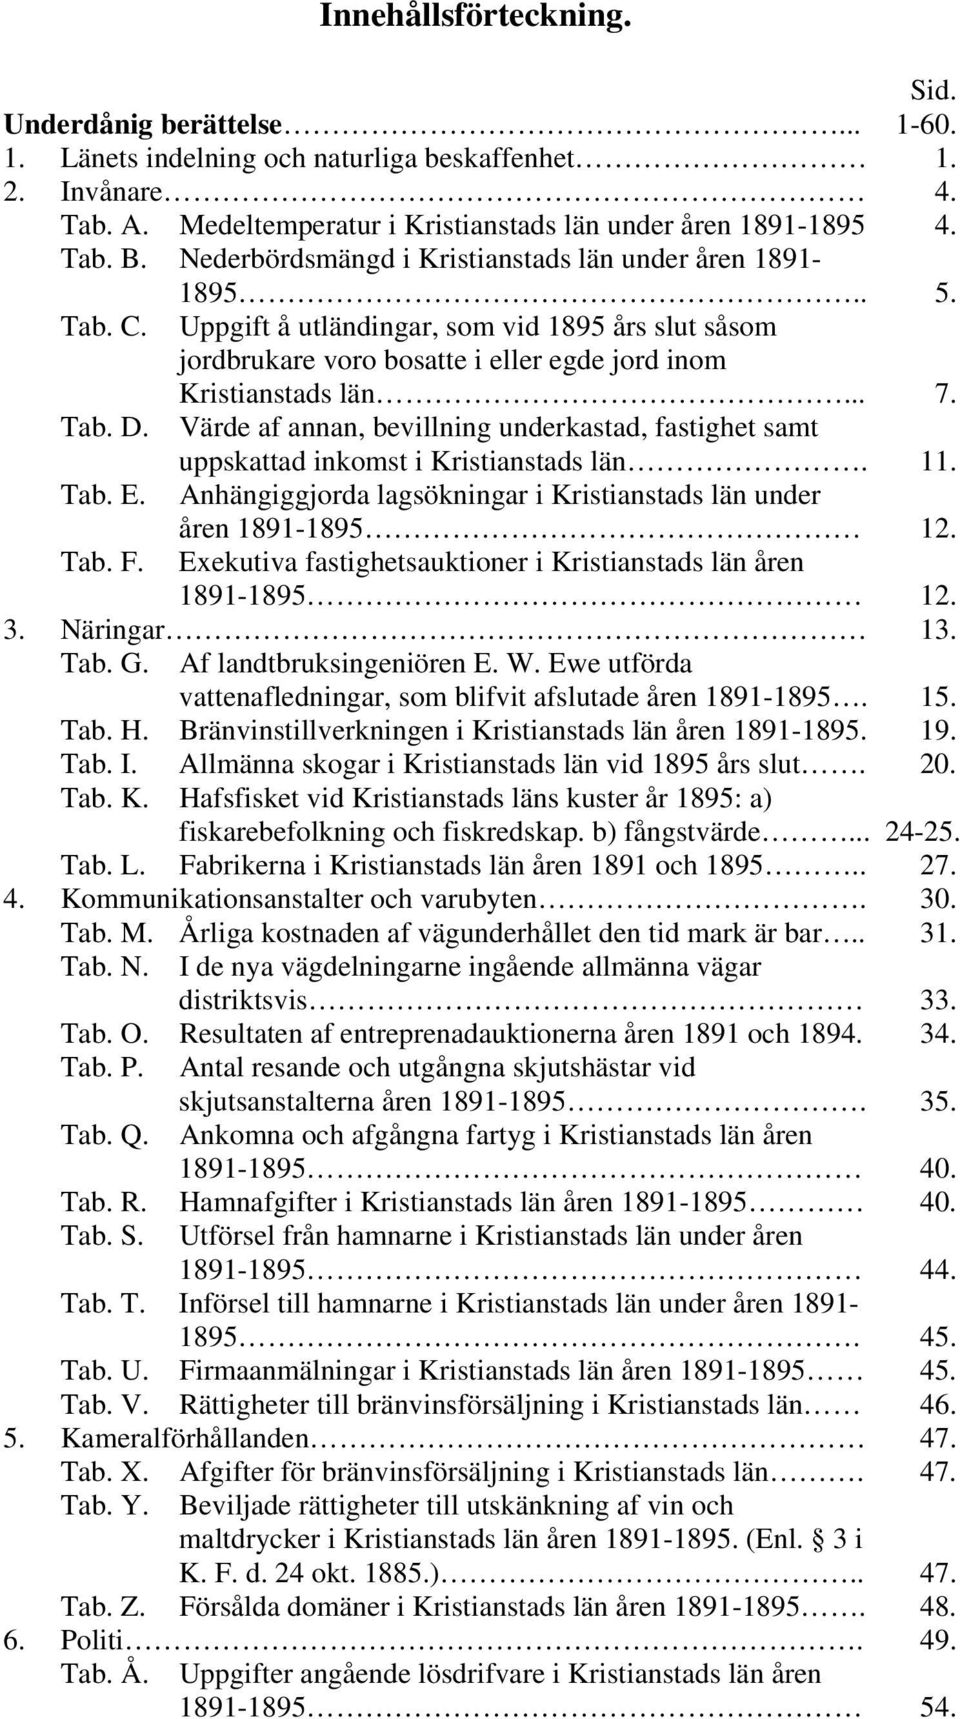 Värde af annan, bevillning underkastad, fastighet samt uppskattad inkomst i Kristianstads län. 11. Tab. E. Anhängiggjorda lagsökningar i Kristianstads län under åren 1891-1895 12. Tab. F.